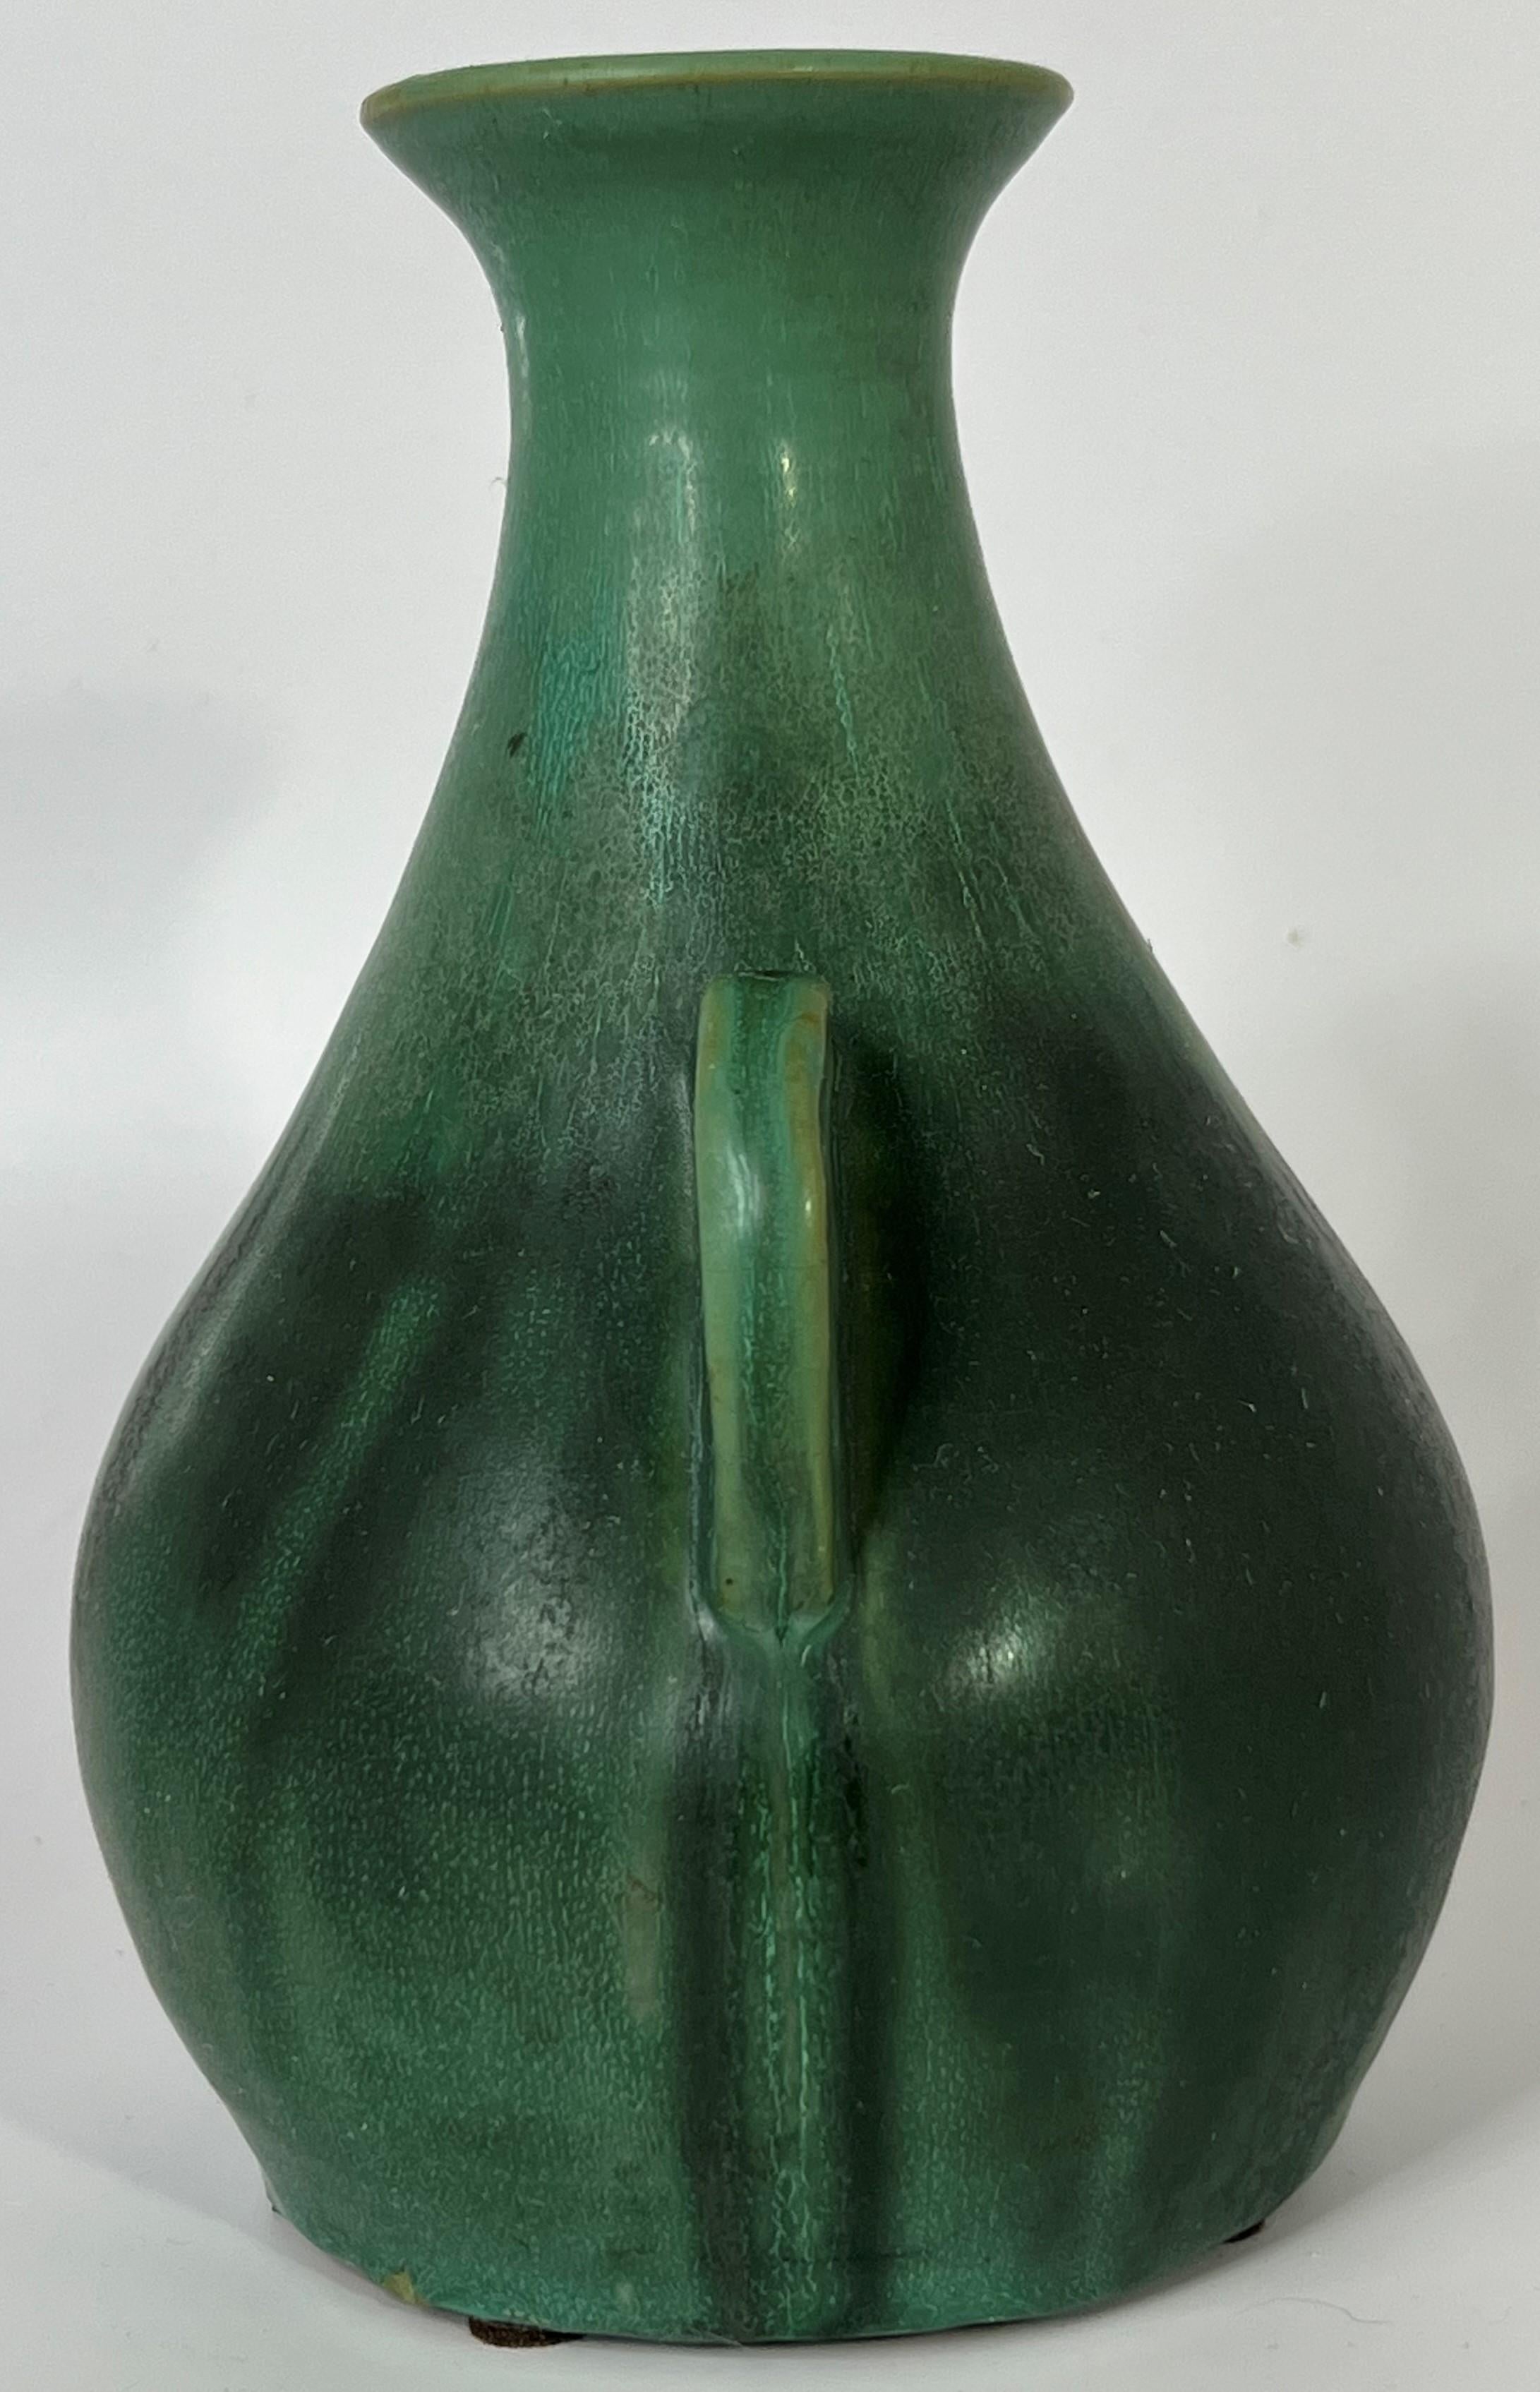 Une forme A rarement vue, de couleur vert mat, provenant de la poterie Bybee de Lexington, KY, entre 1922 et 1929.  Cet exemple fait partie de la gamme 